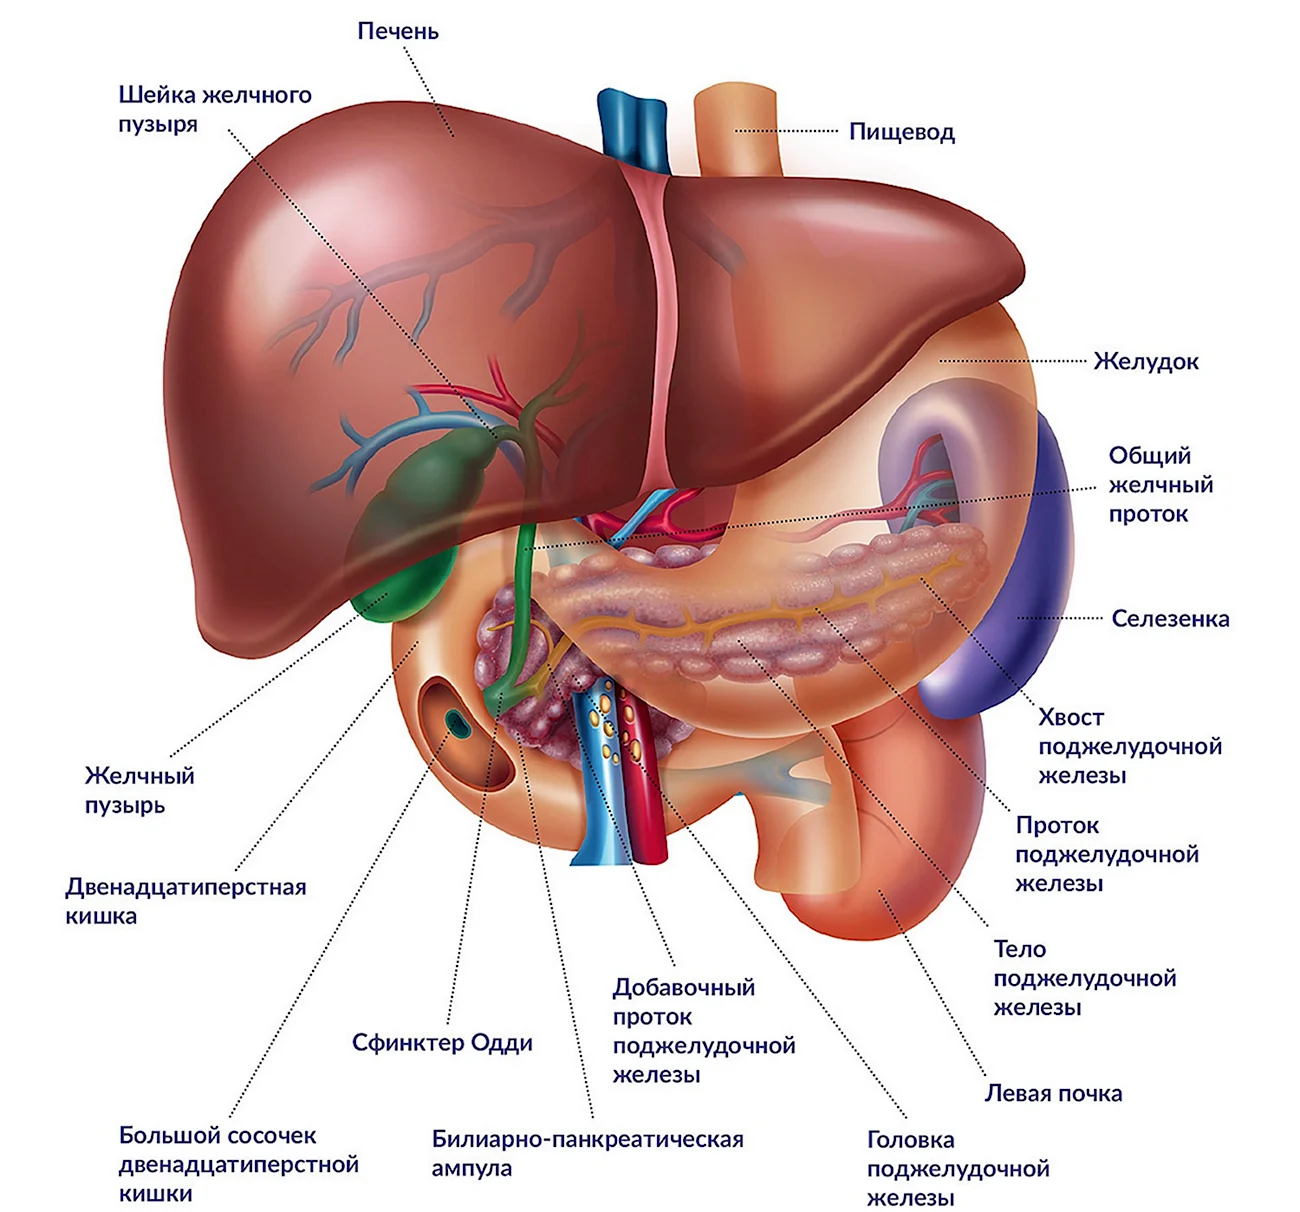 Анатомия внутренних органов брюшной полости женщины. Картинка